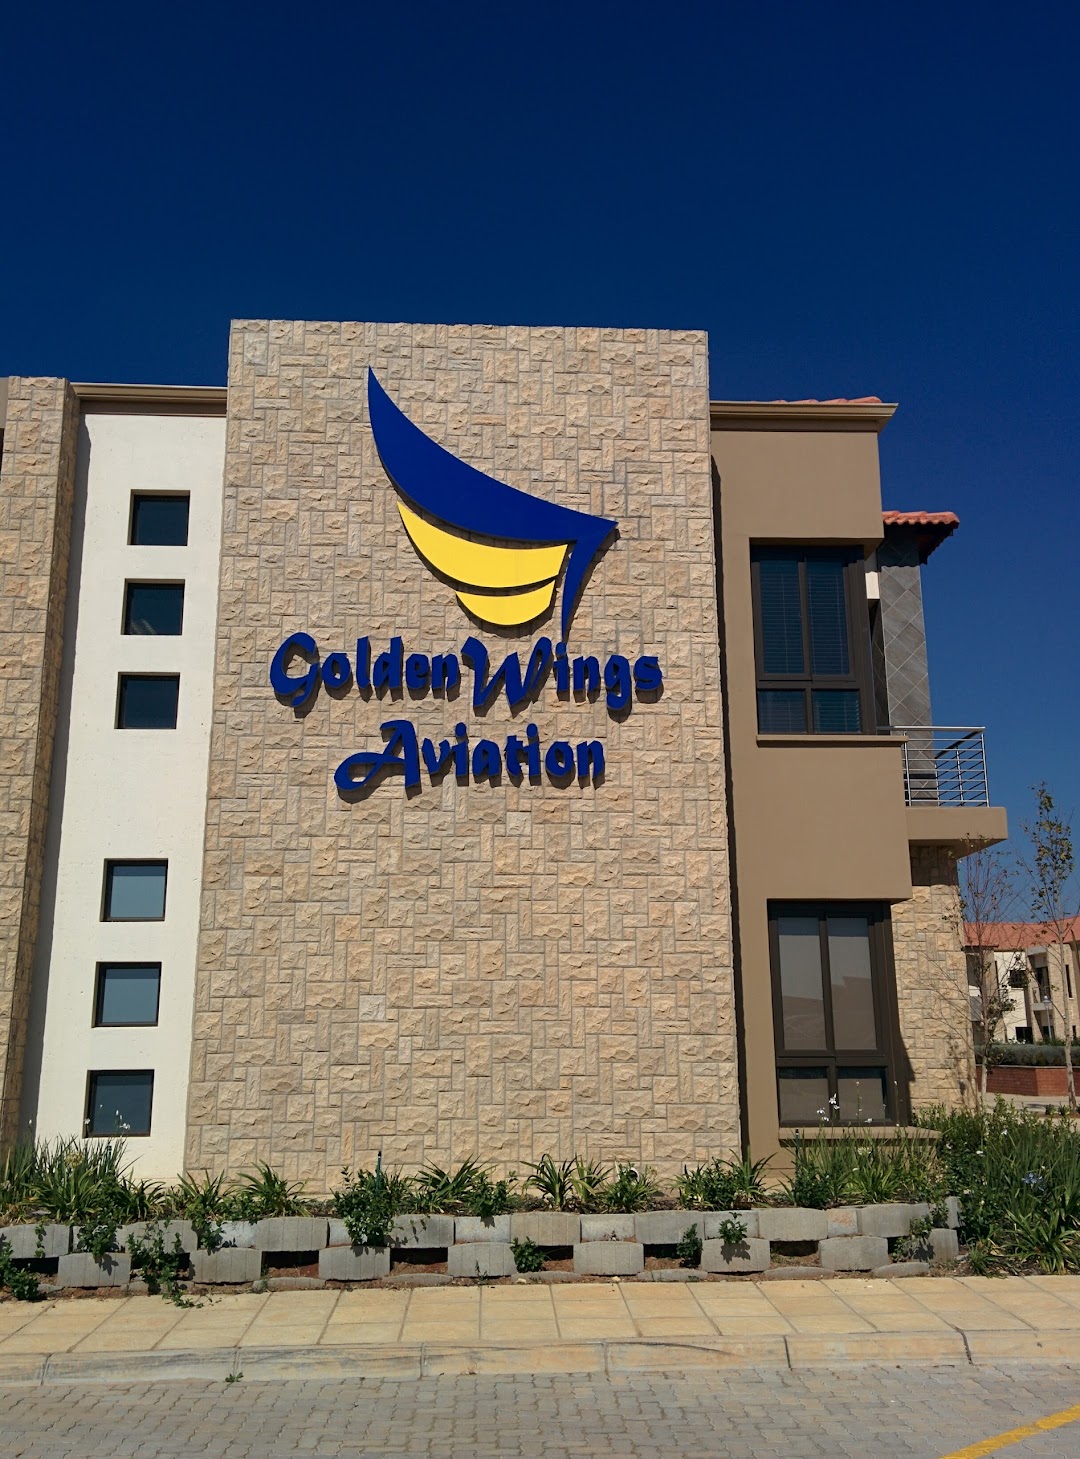 GoldenWings Aviation